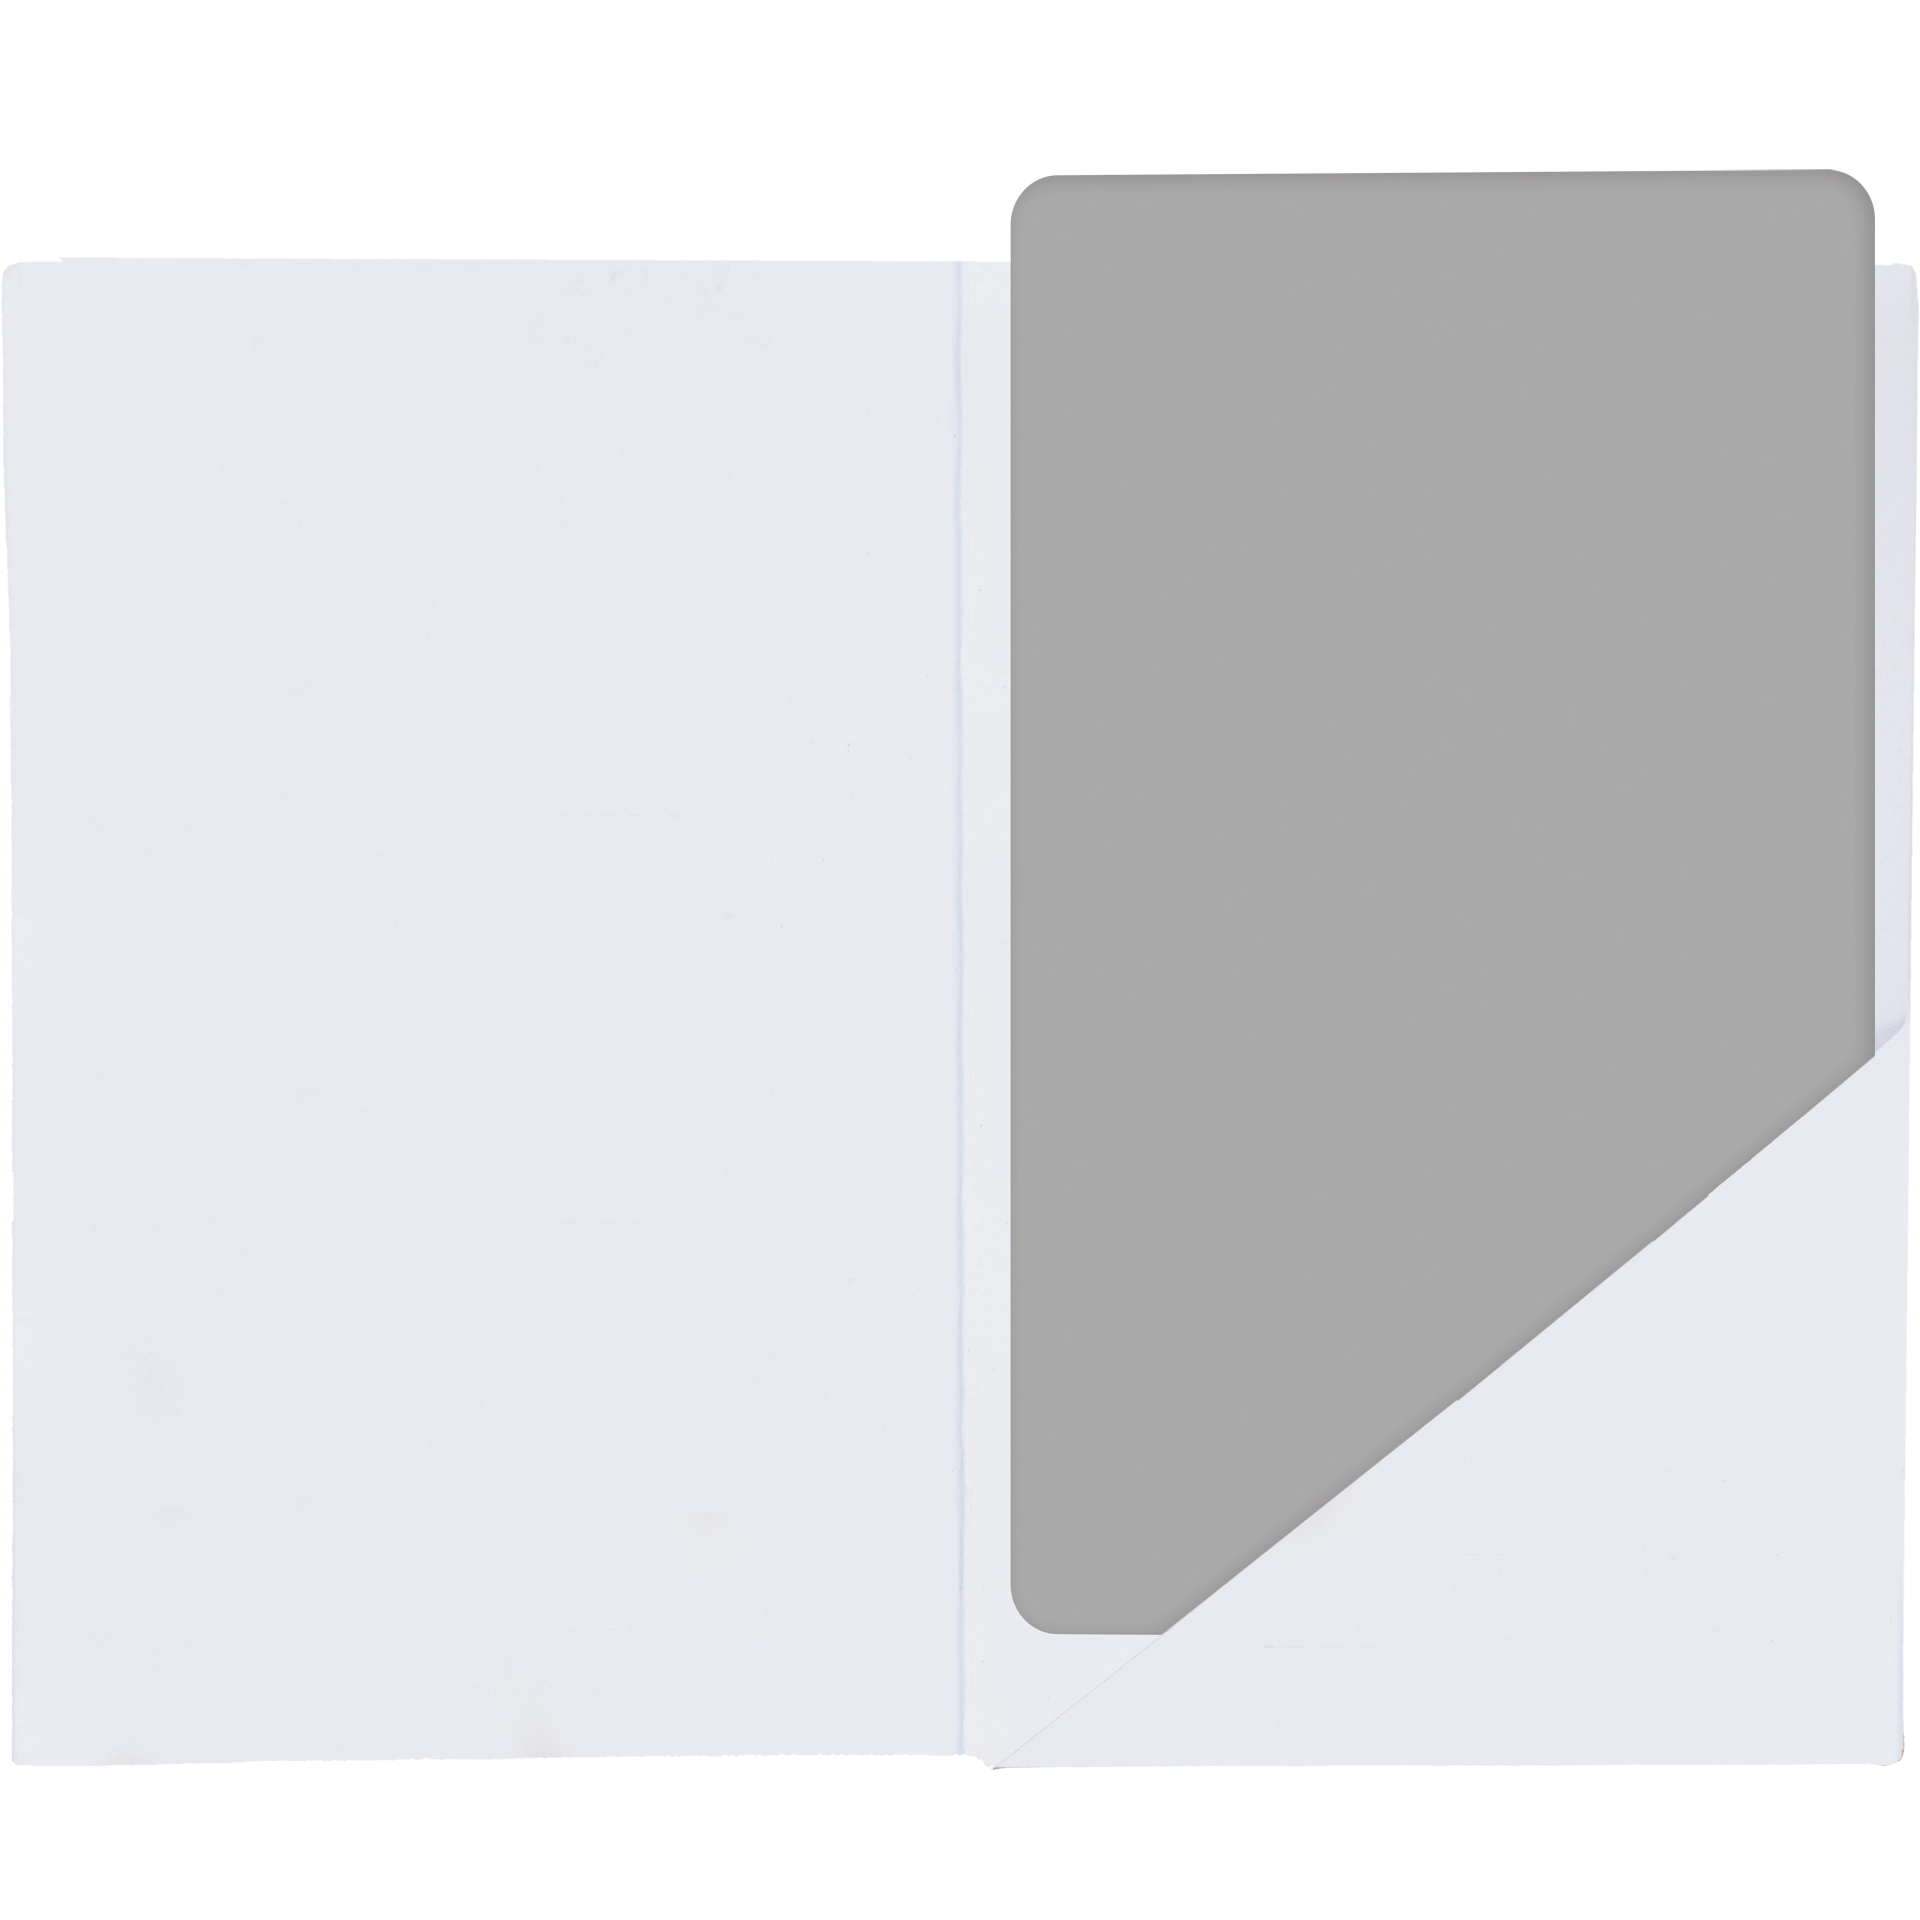 Schlüsseletuikarte B1 7x10 cm Papier gestrichen oder Usomano 4/4 fbg. Digitaldruck